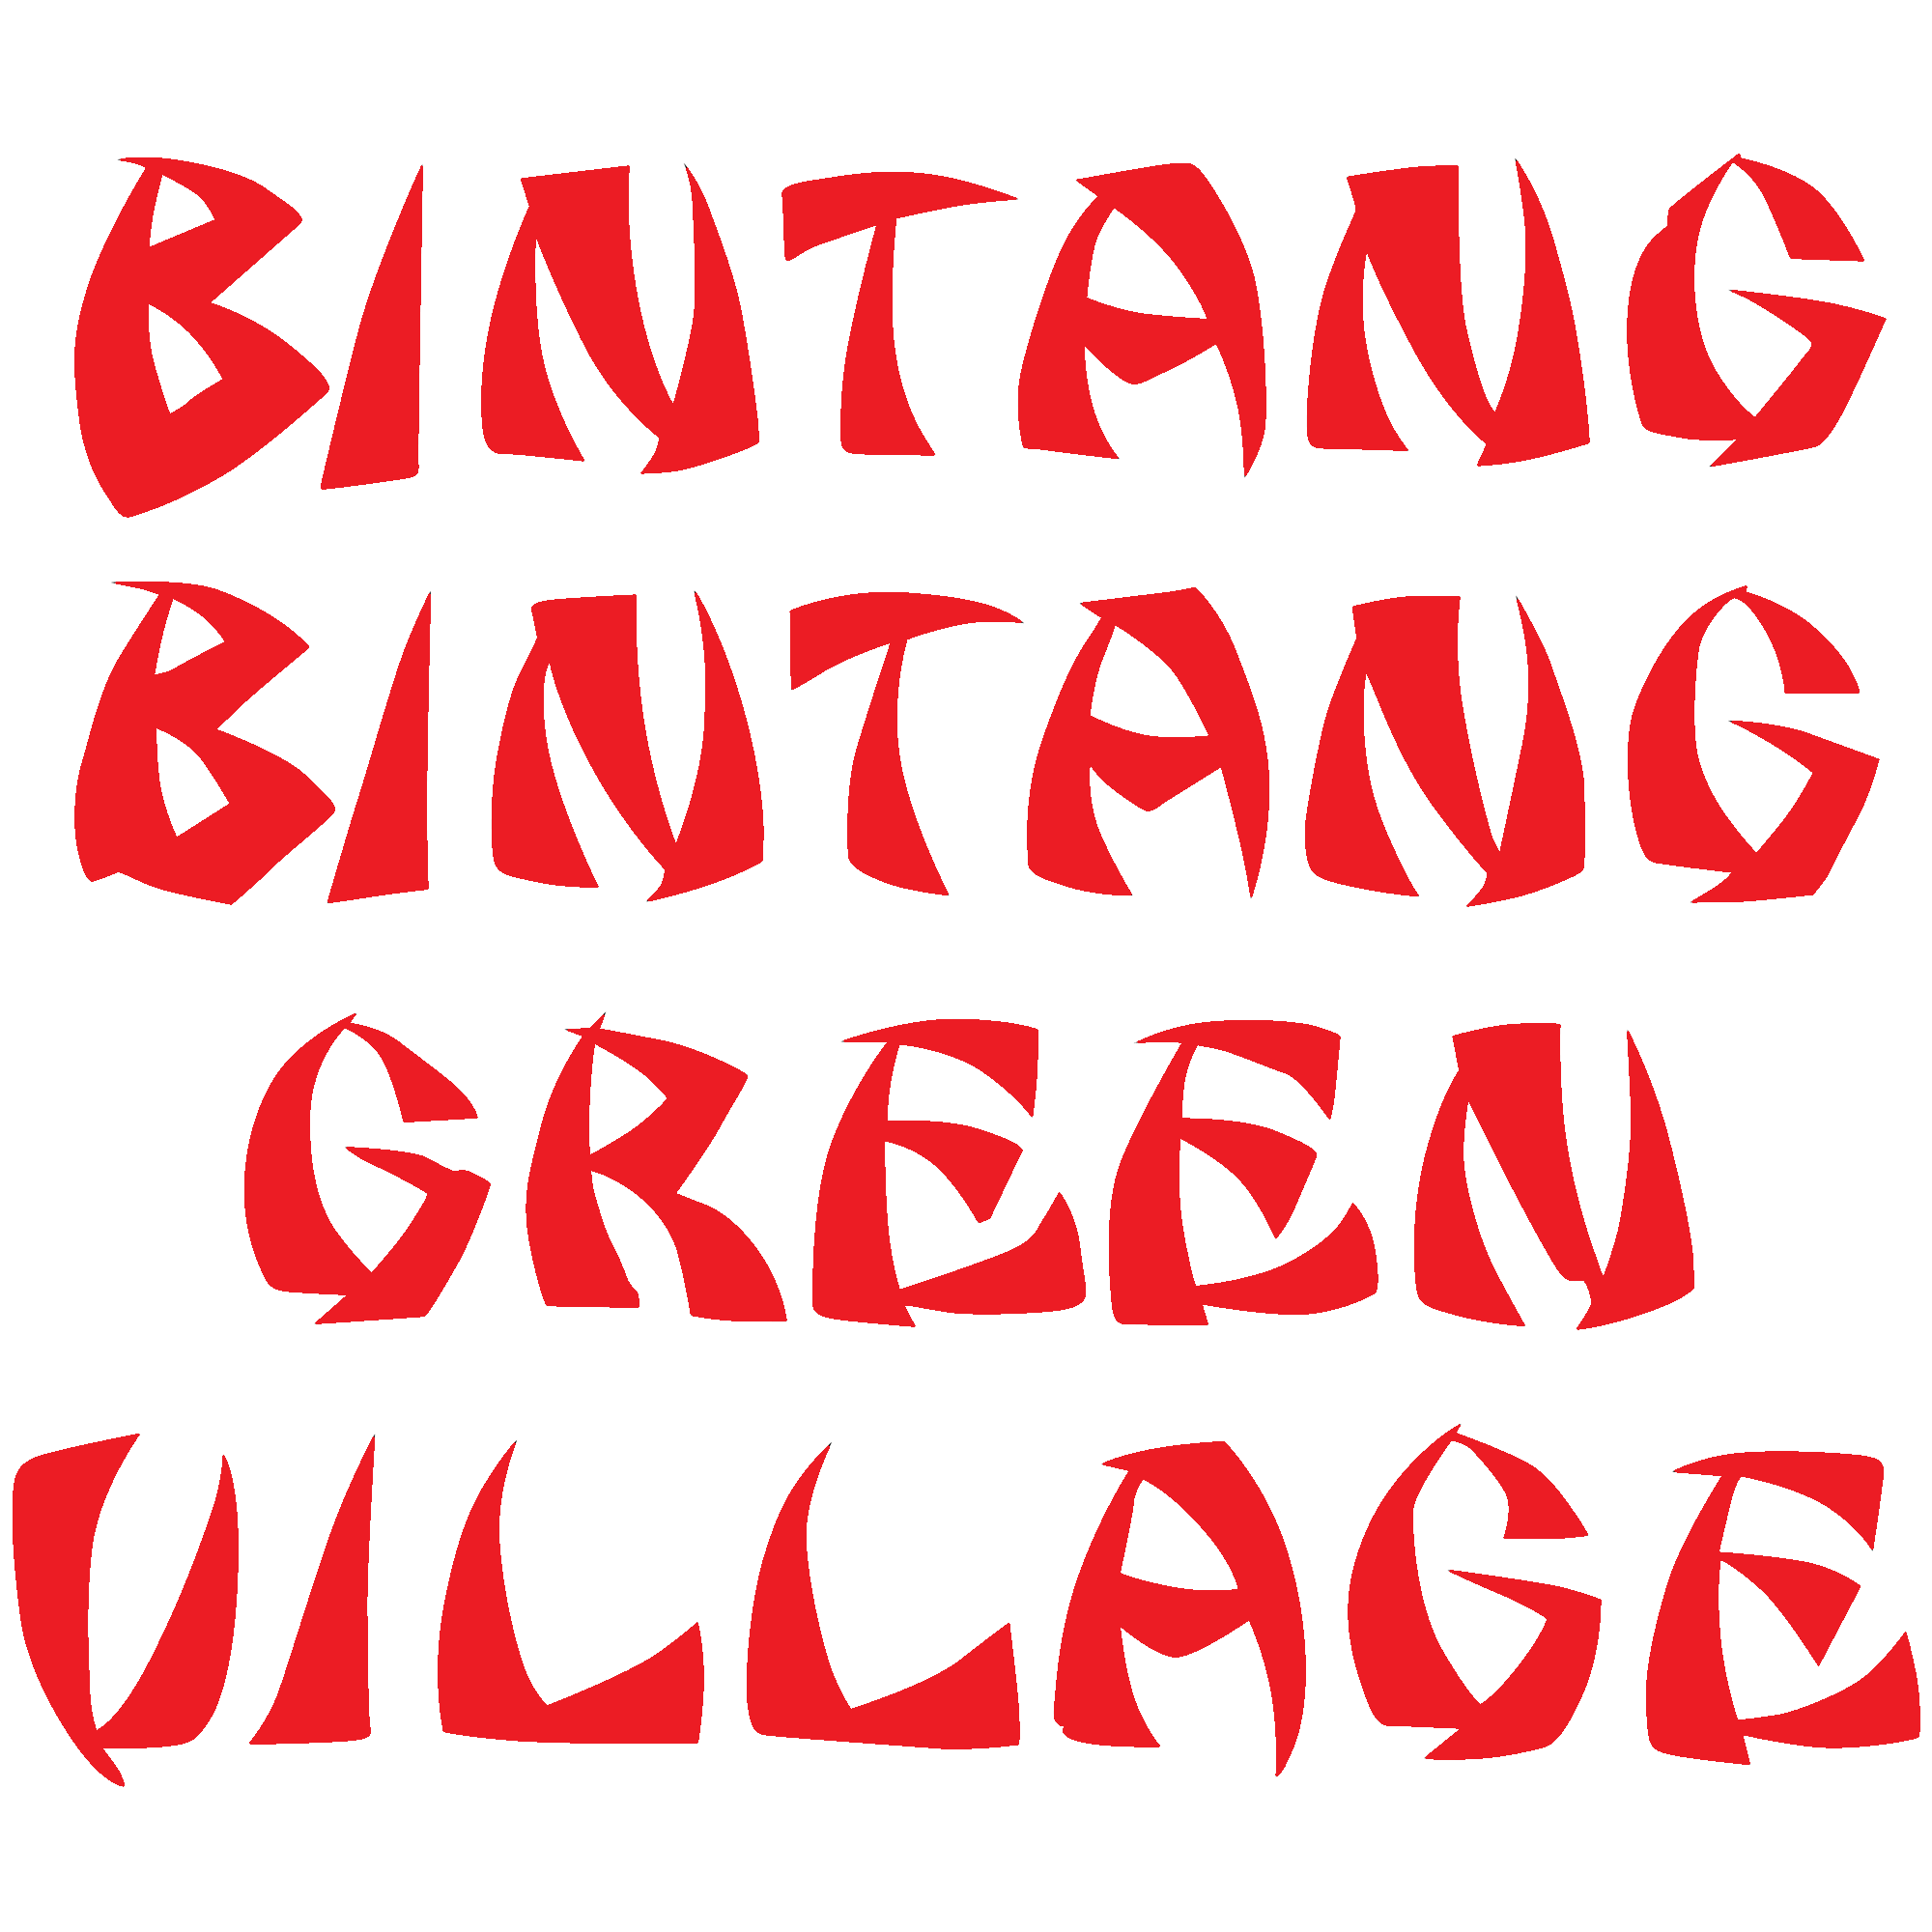 greenvillage